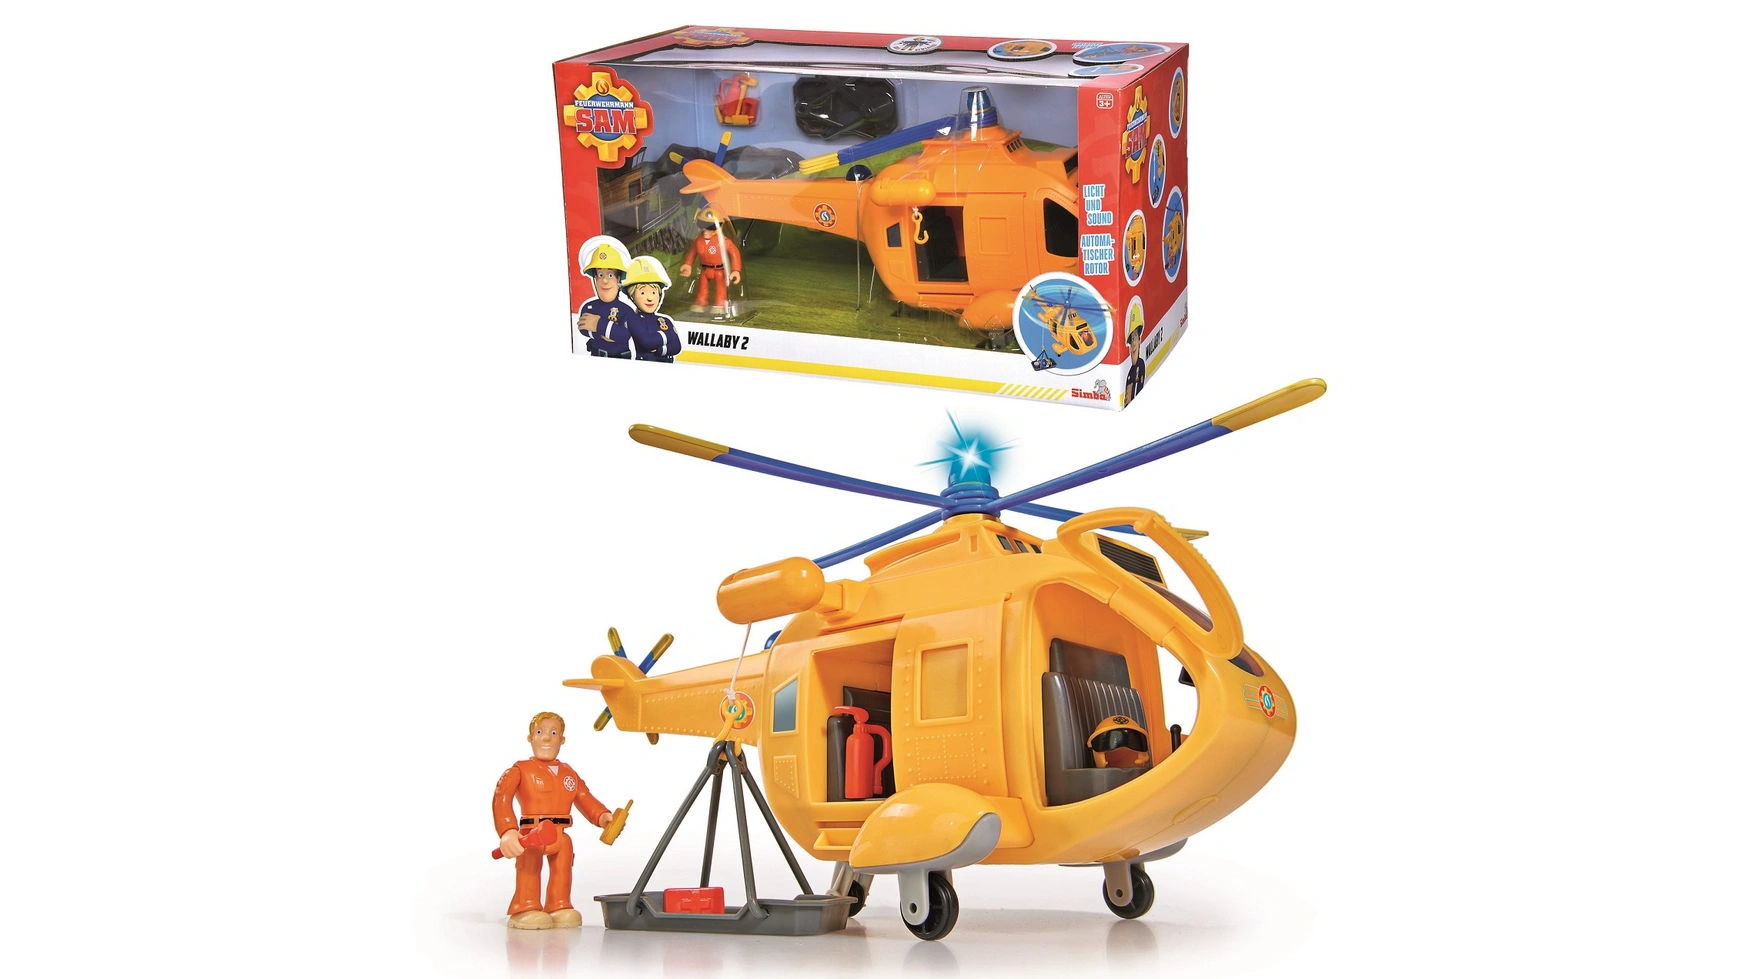 Пожарный сэм вертолет валлаби 2 Simba пожарный сэм стремительный спасательный самолет simba